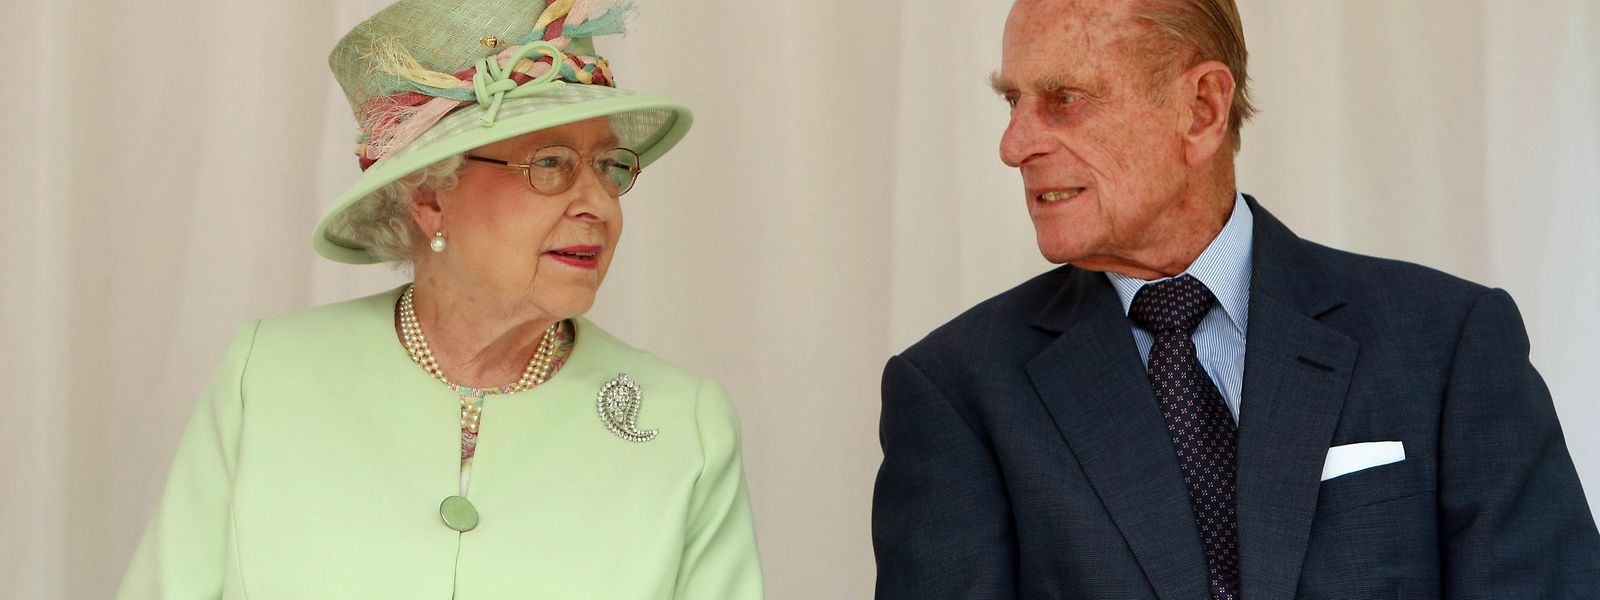 Die Queen und Prinz Philip (98) hatten sich am Donnerstag zu einem vorgezogenen Osteraufenthalt auf Schloss Windsor zurückgezogen. Durch ihr hohes Alter gehört das Paar zu einer Risikogruppe.